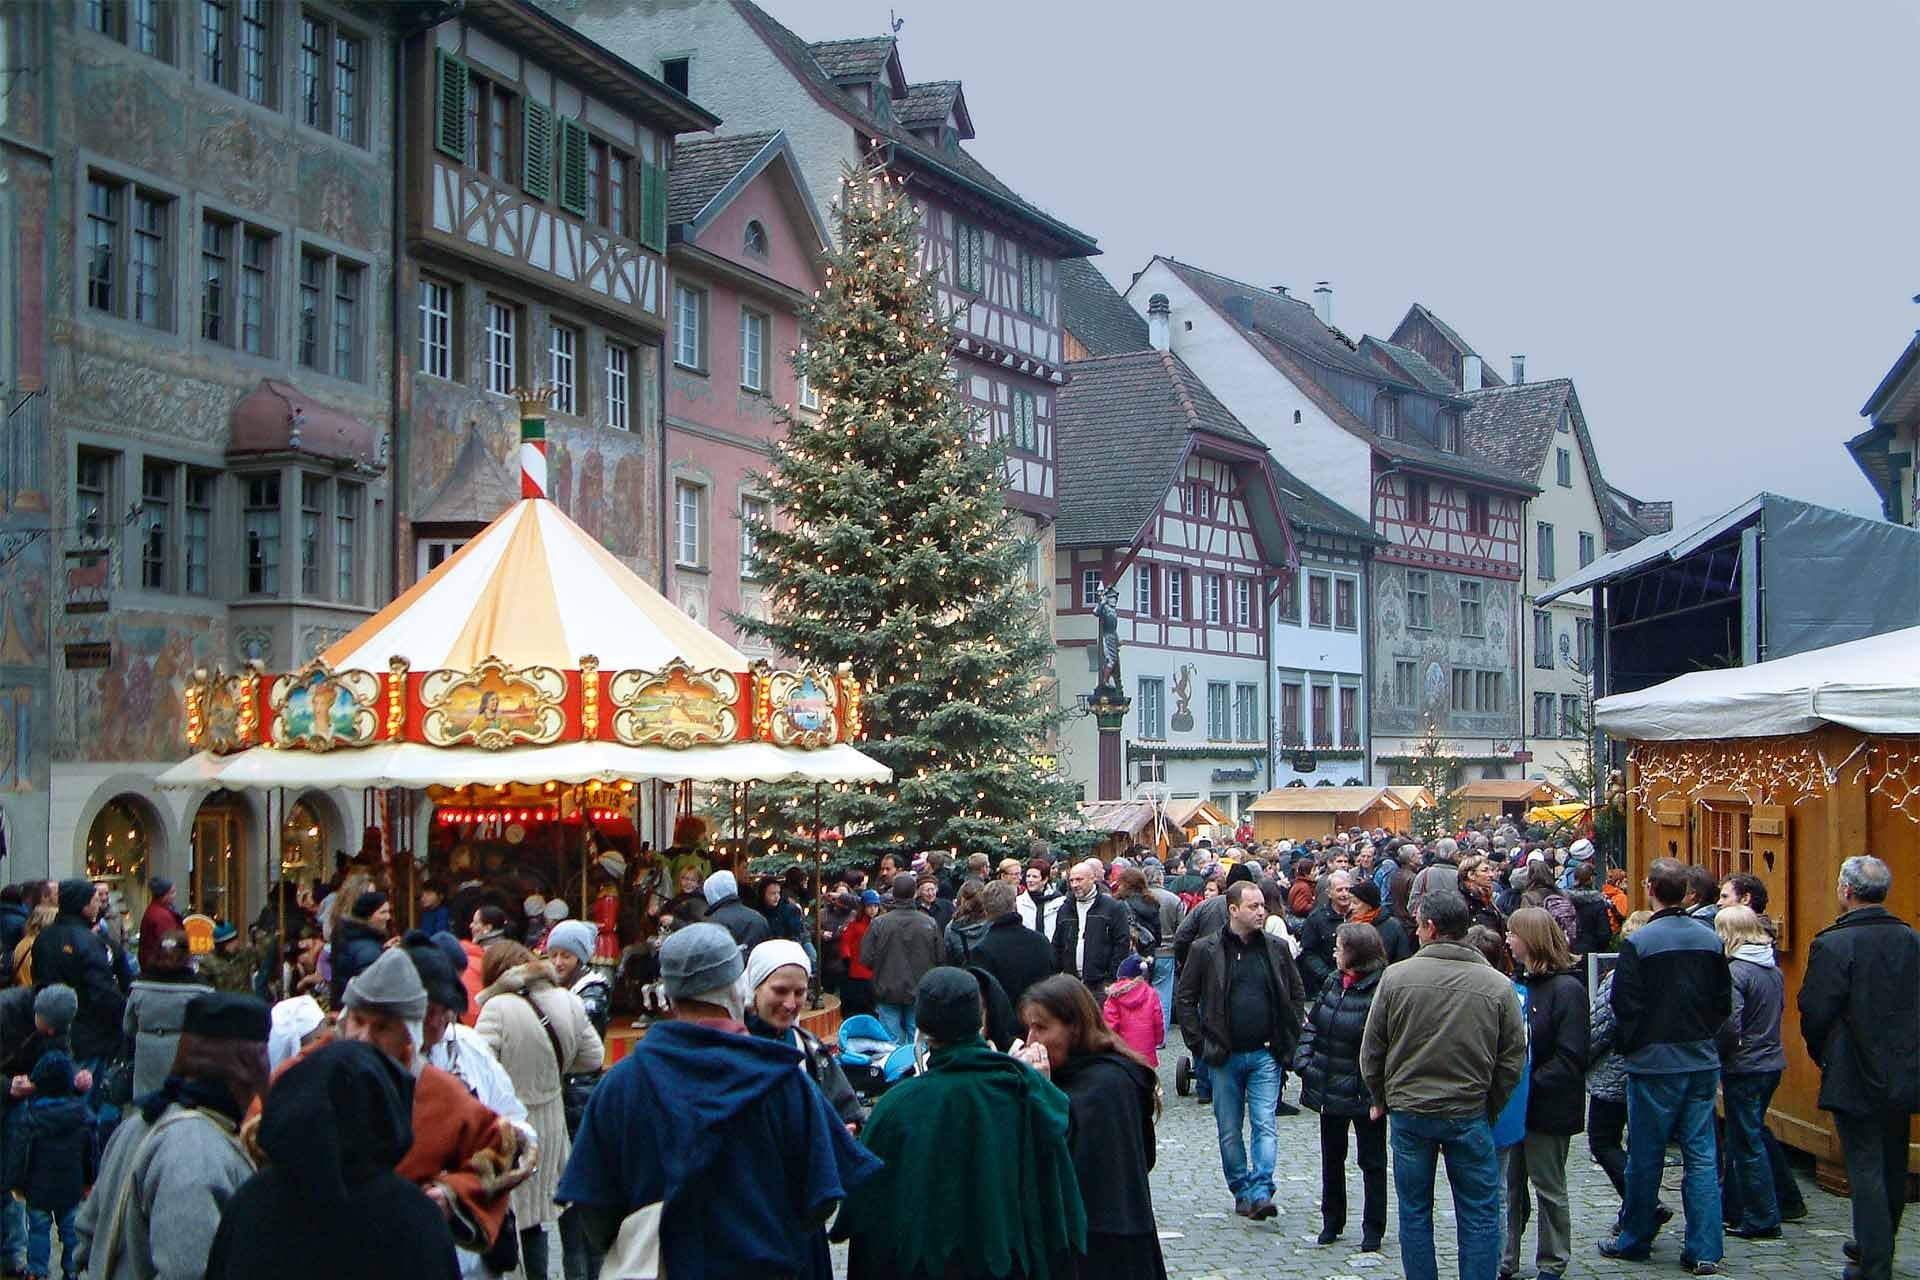 Die mittelalterlichen Häuser machen den Rathausplatz zu einer besonderen Kulisse für den Weihnachtsmarkt.